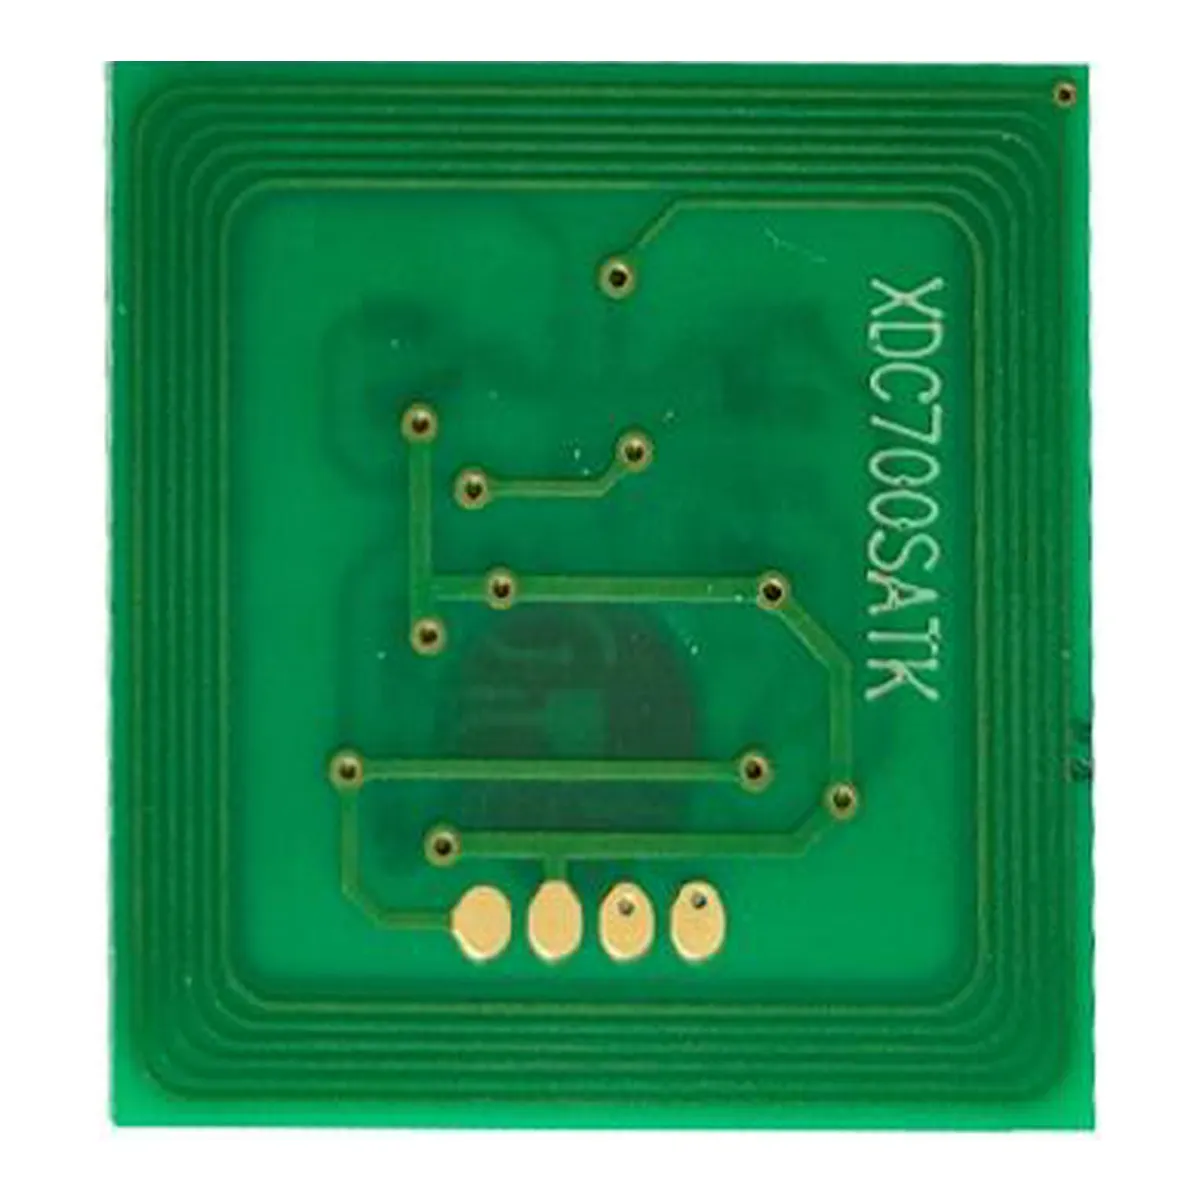 Chip reimpostazione cartuccia chip per cartuccia Xerox 120DPS chip numerabile/per supporti CD-R xerox